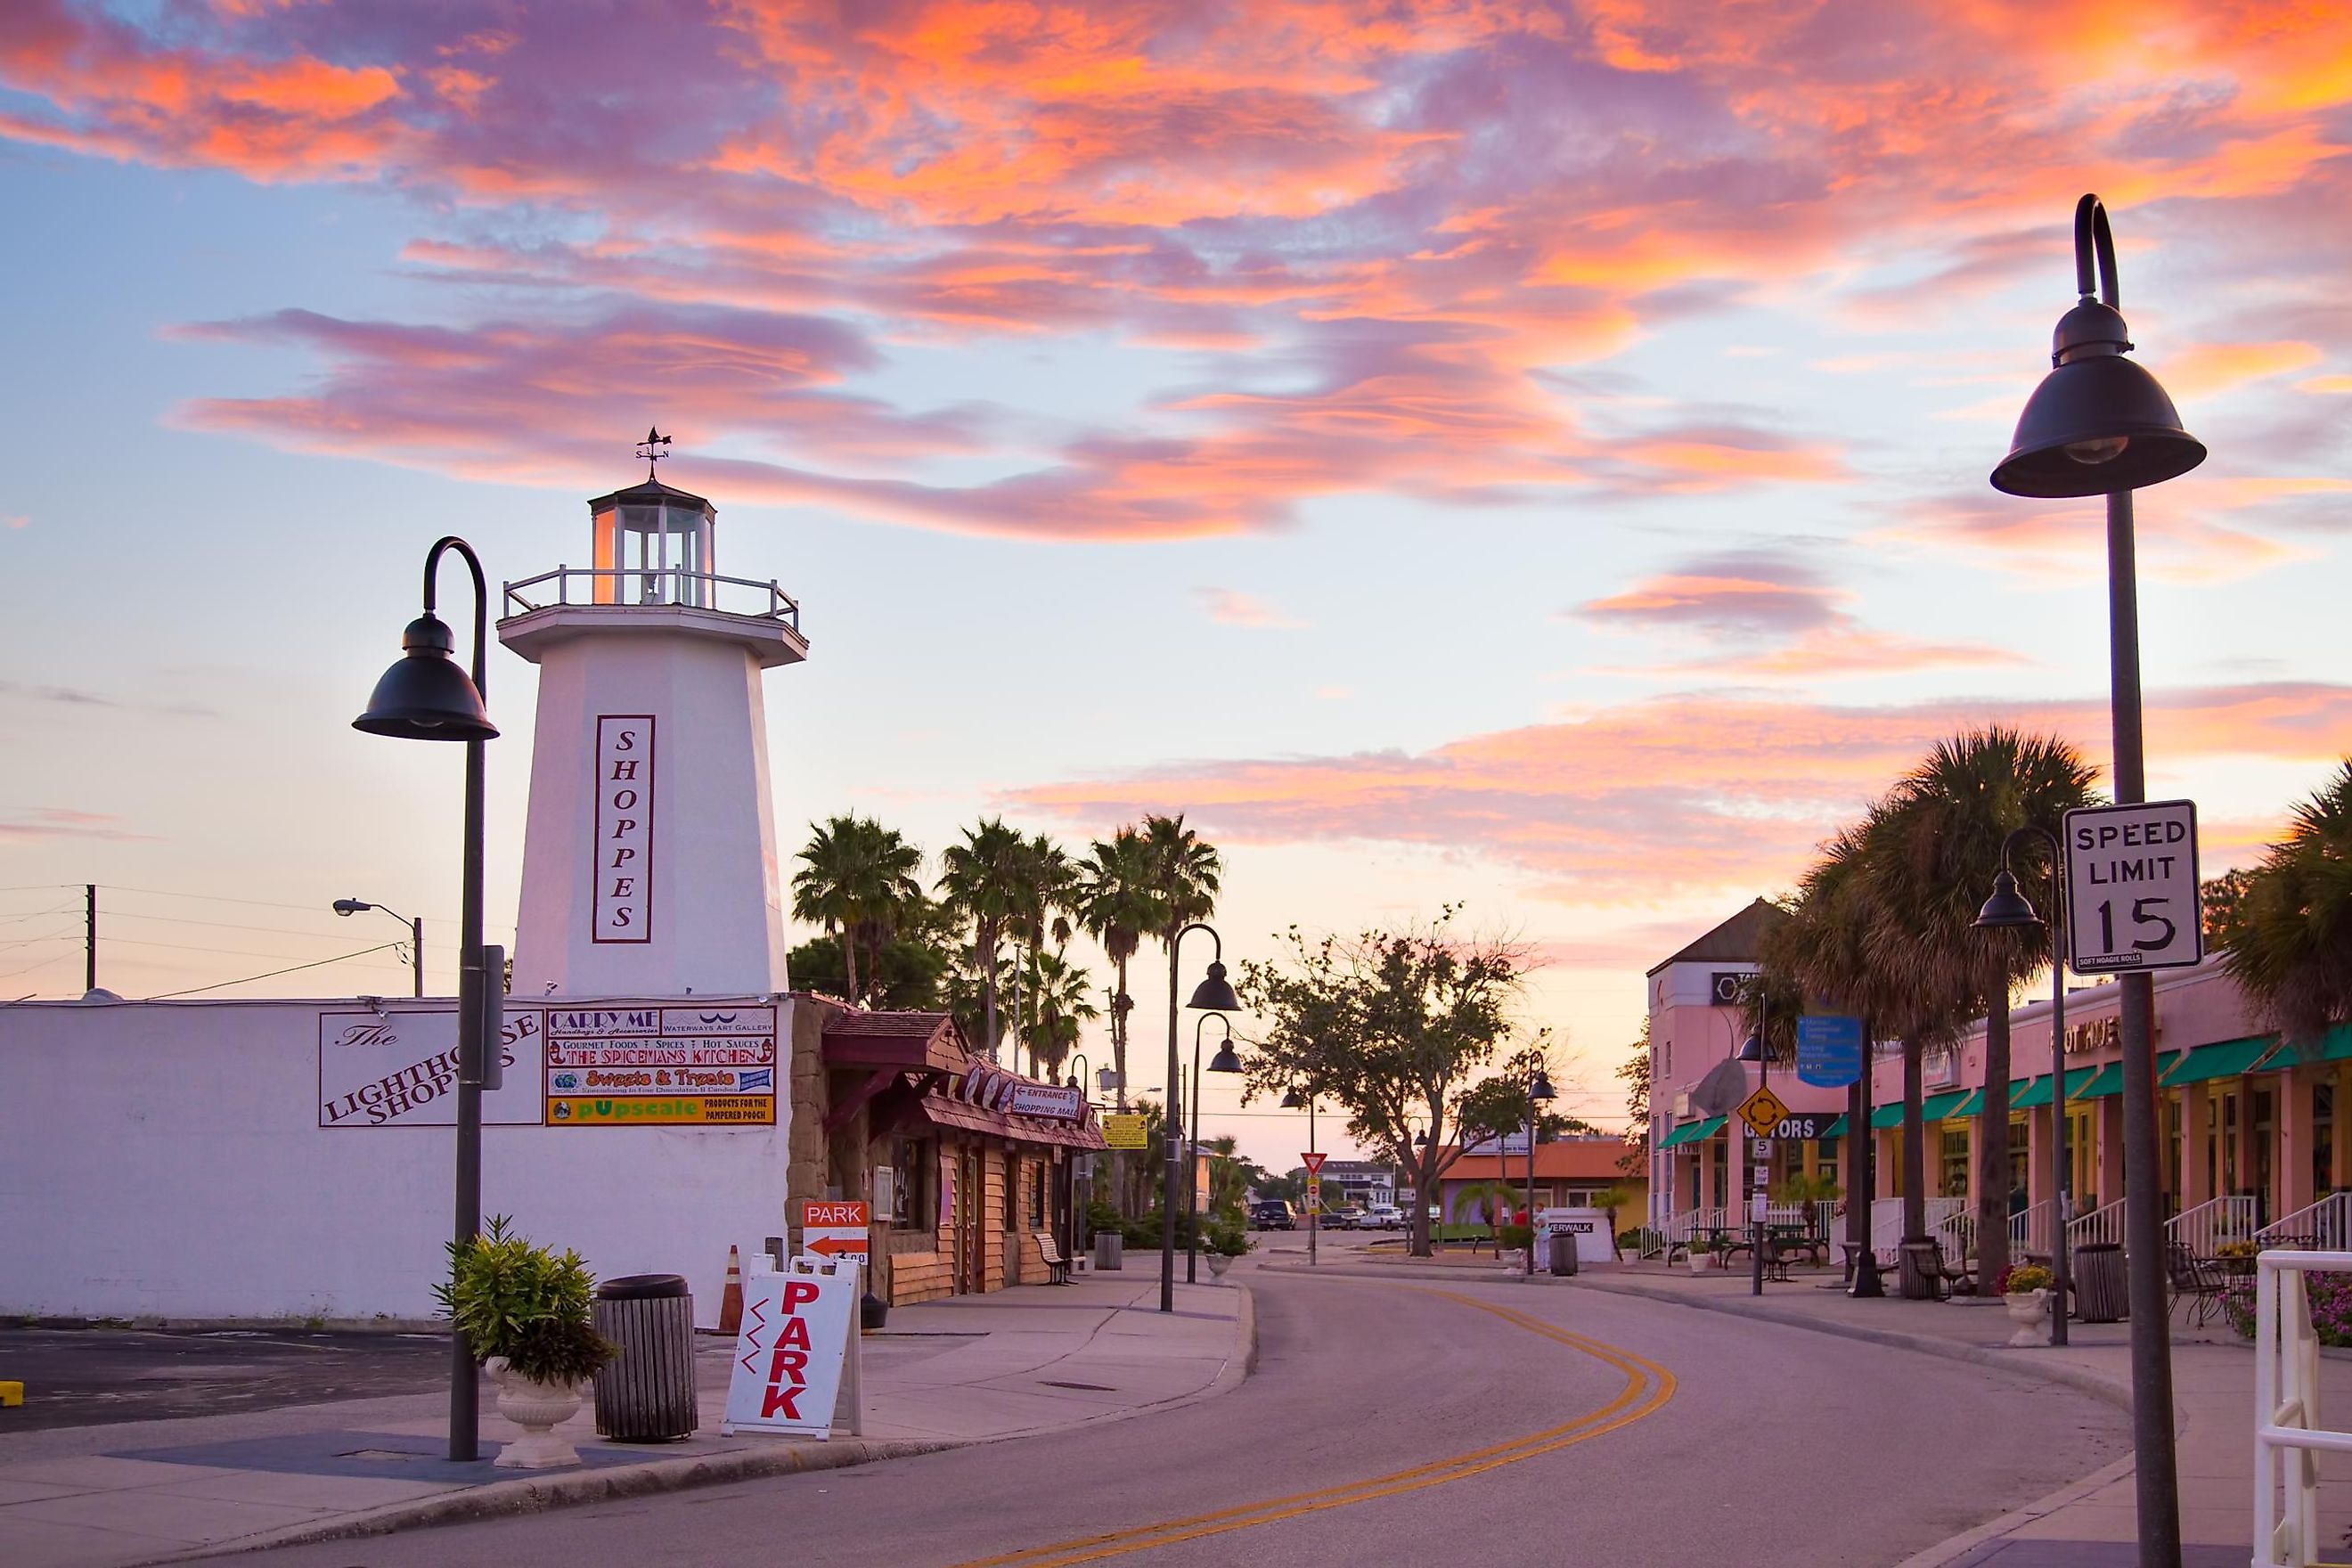 Tarpon Springs, Florida at sunset.